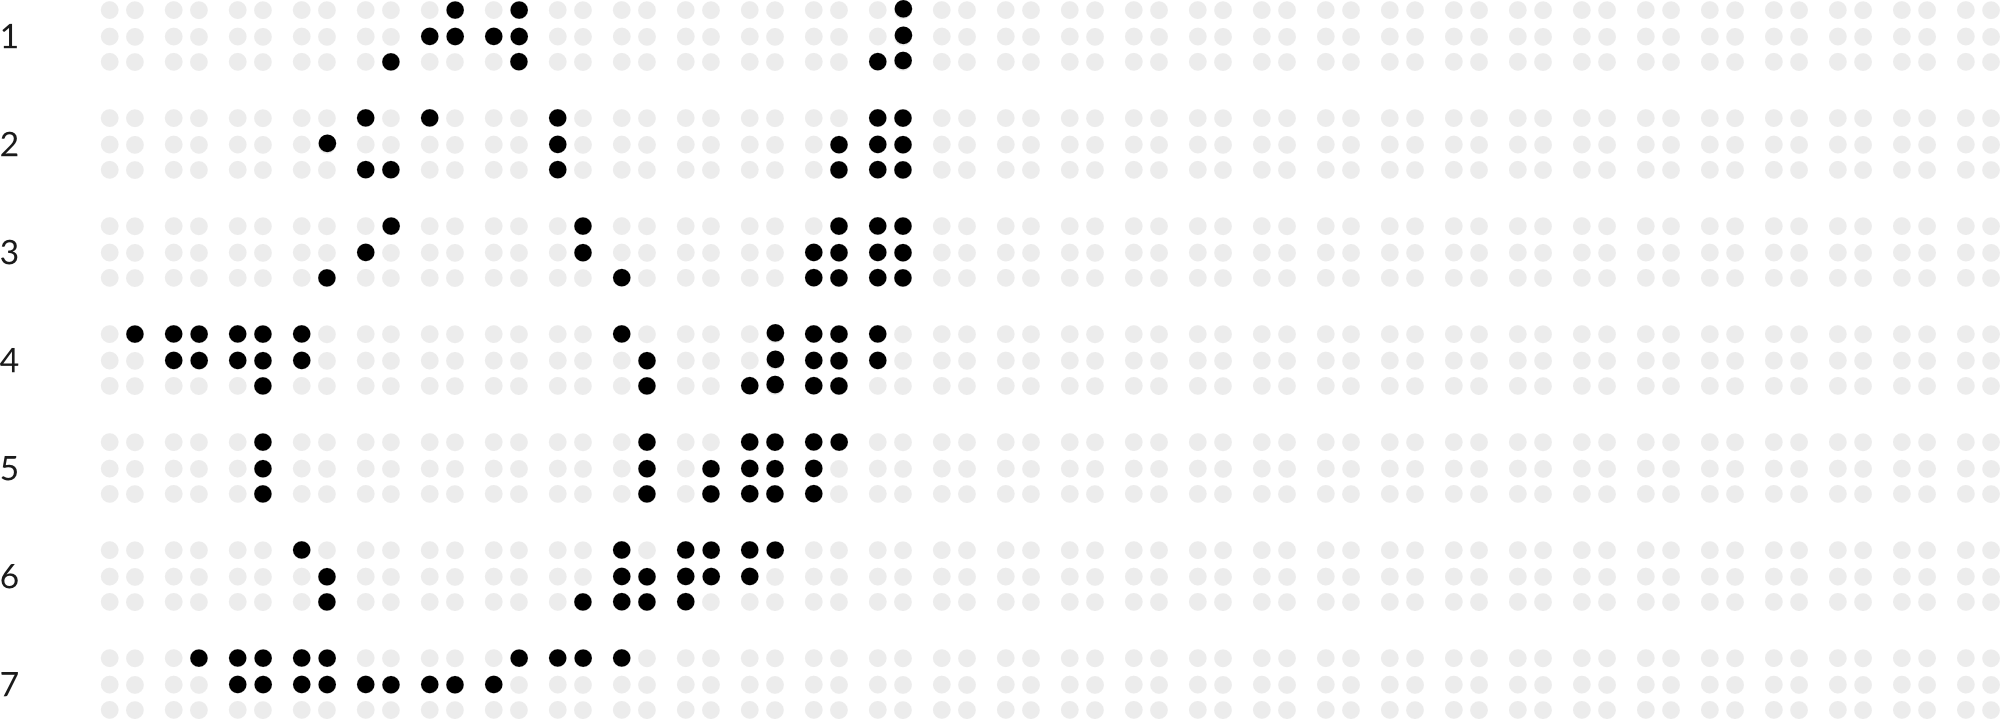 Braillebild Eichhörnchen